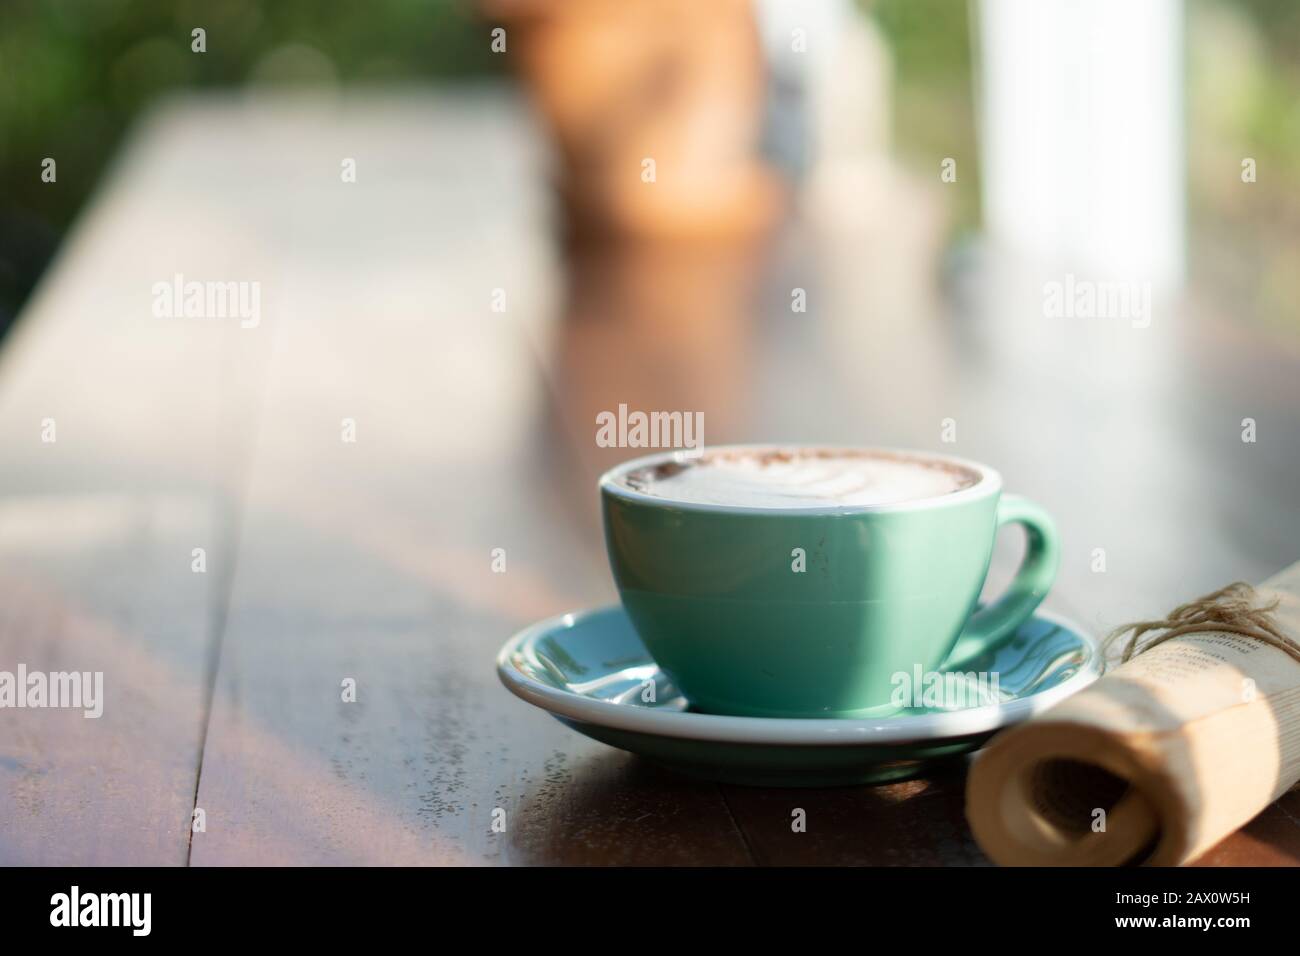 Une tasse de café de cappuccino noir chaud sur une table en bois propre vue sur le dessus de la table dans un cadre chaud le matin. Espresso chaud dans un mug en céramique sur du bois brun rustique vide c Banque D'Images